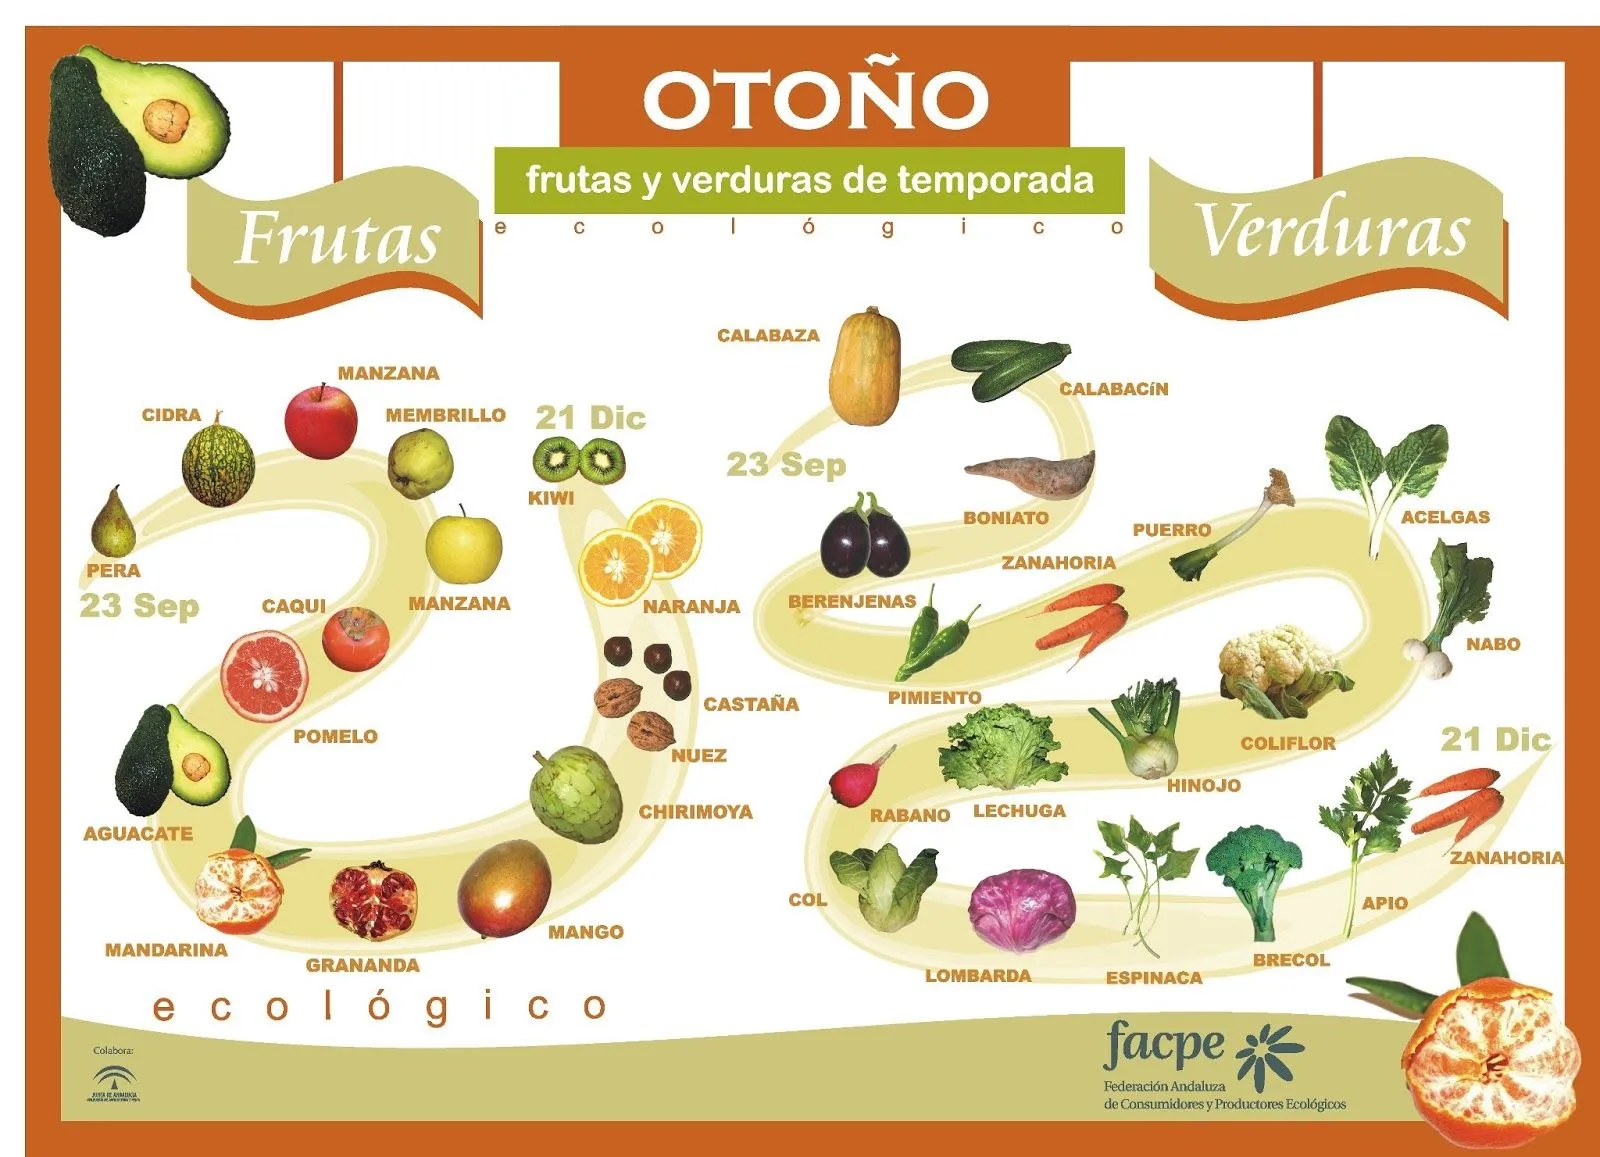 Frutas y verduras de otoño | Virtual Spanish Classroom